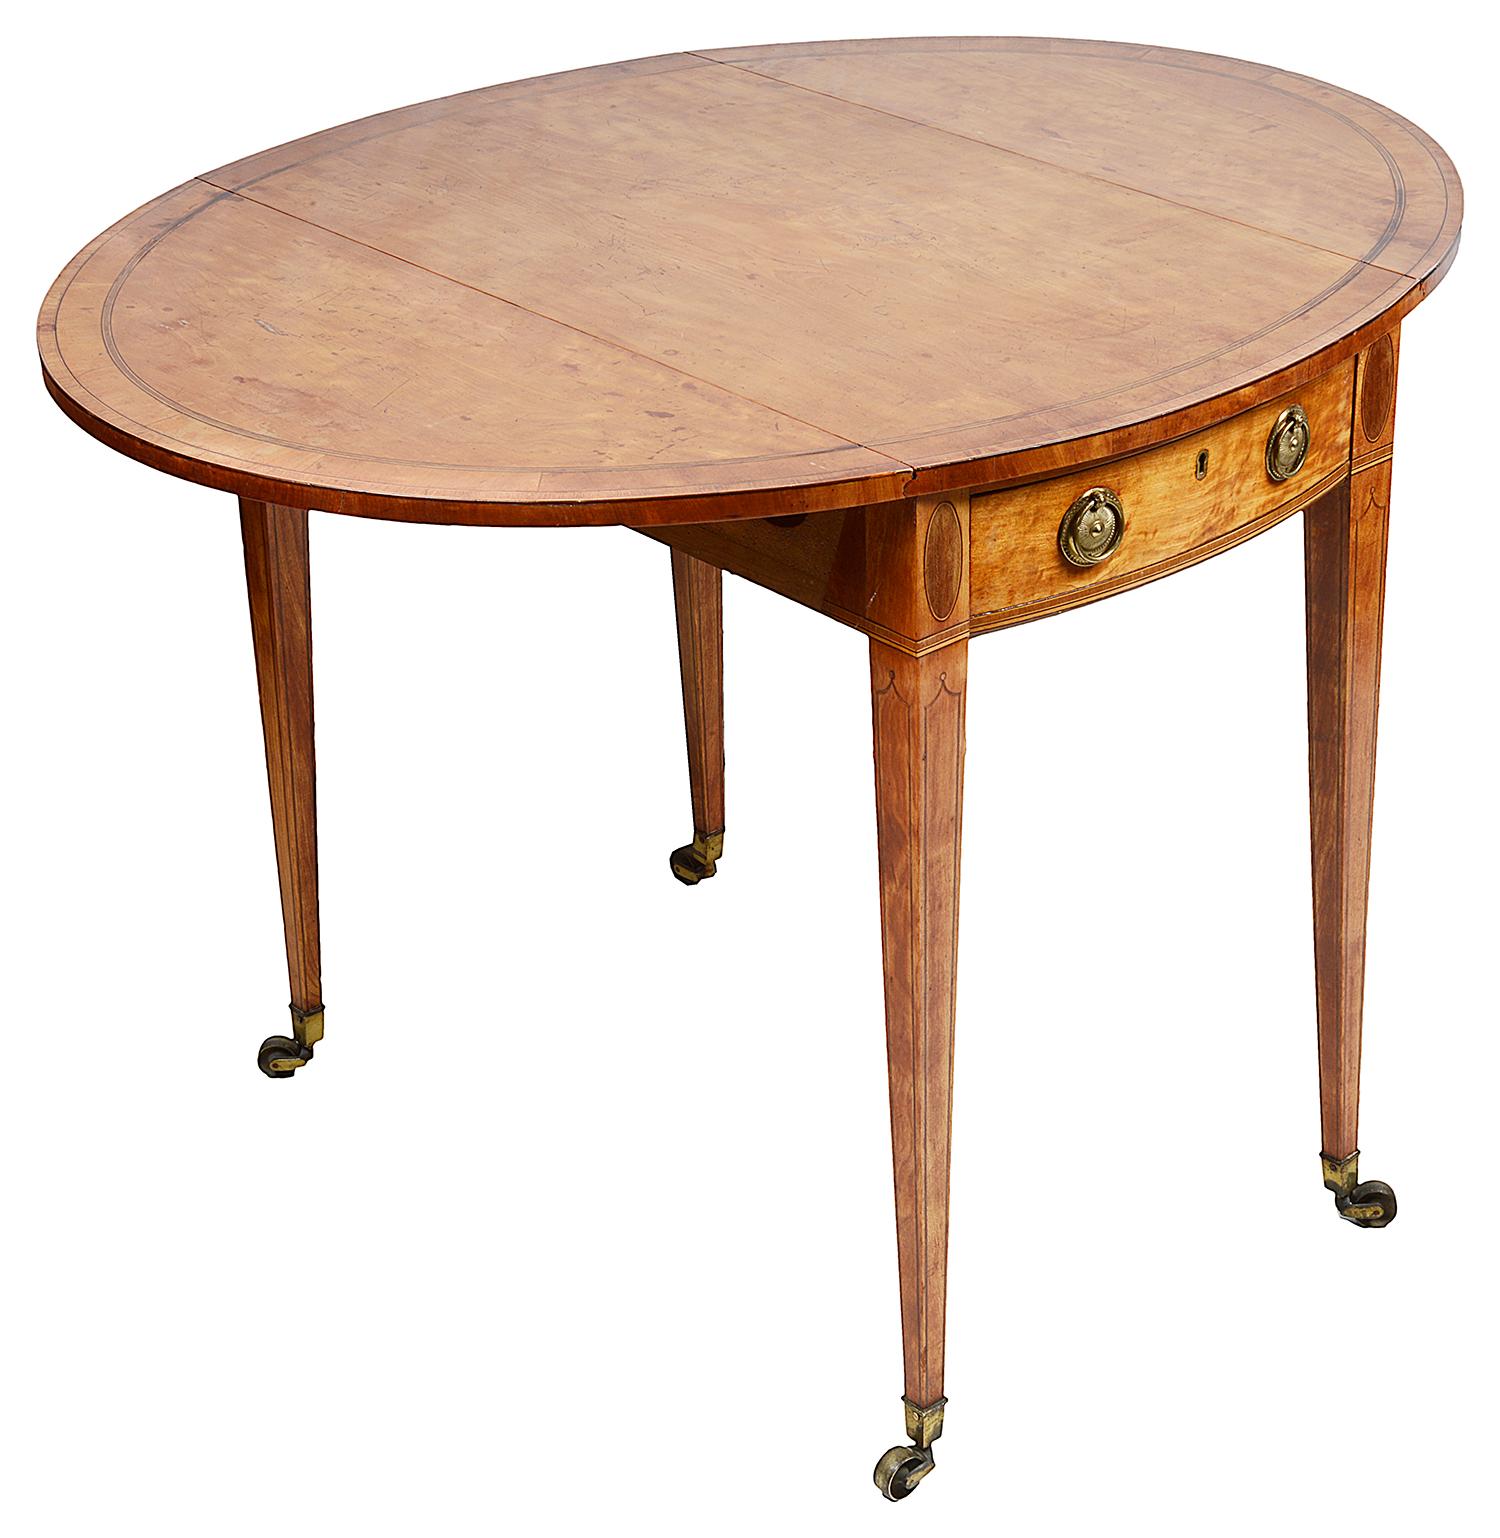 Eine sehr gute Qualität 18. Jahrhundert satinwood Pembroke Tisch, der über gebändert oben, ein einziger Bogen vor Schublade, original Messing Griffe, oval eingelegten Platten über quadratisch verjüngt, Ebenholz String eingelegt Beine, endend in der